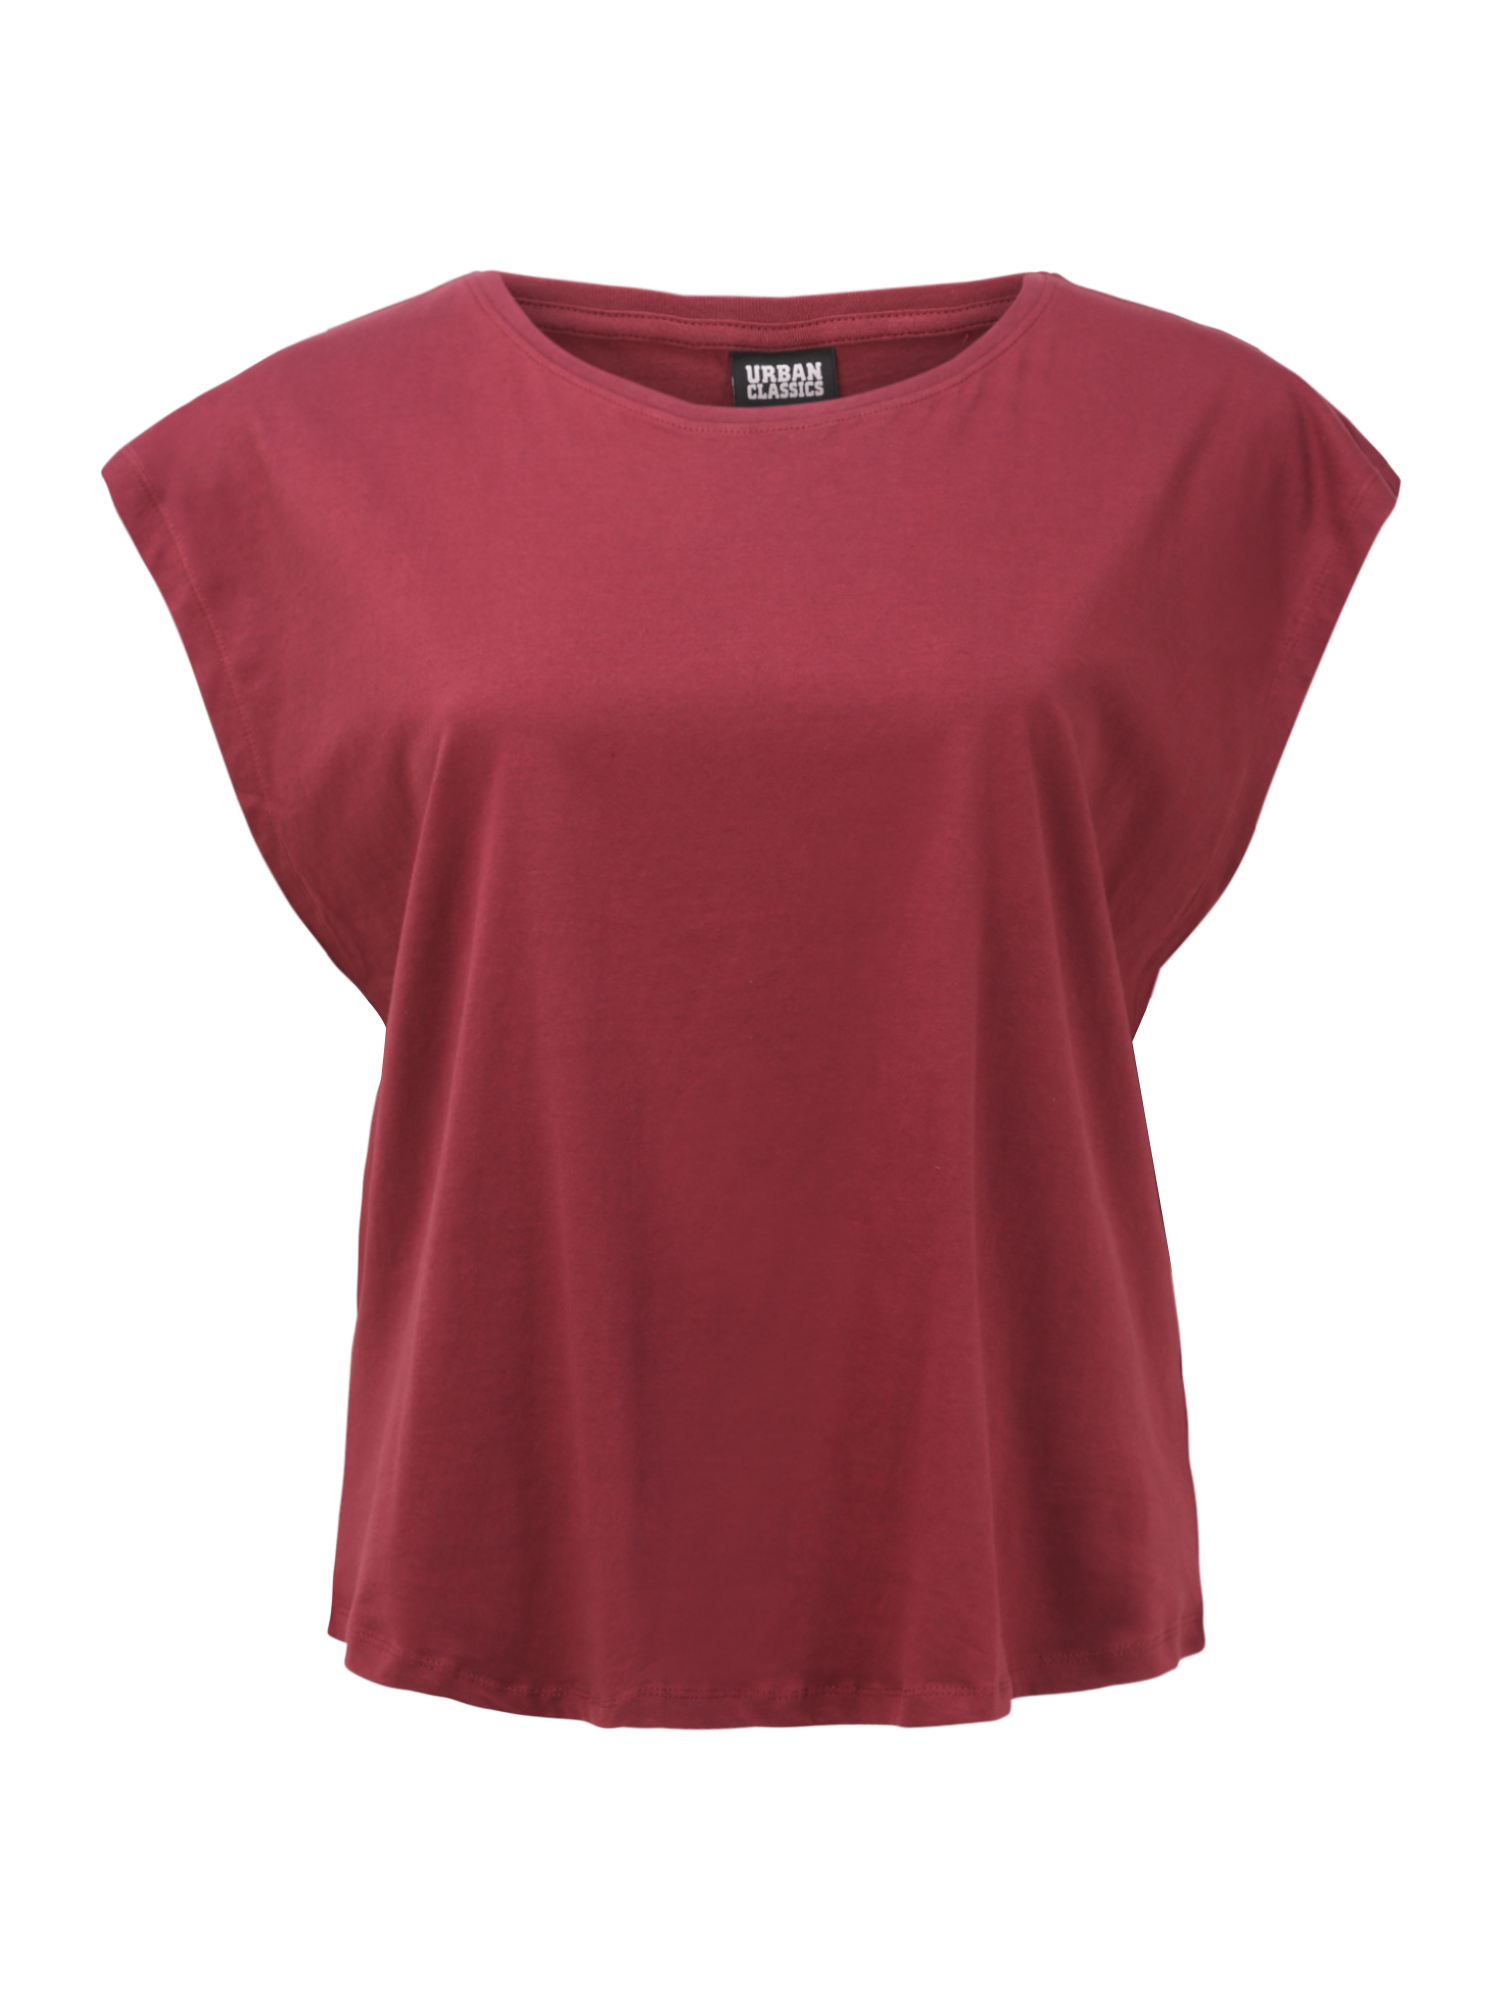 Odzież Kobiety Urban Classics Curvy Koszulka Basic Shaped Tee w kolorze Wiśniowo-Czerwonym 